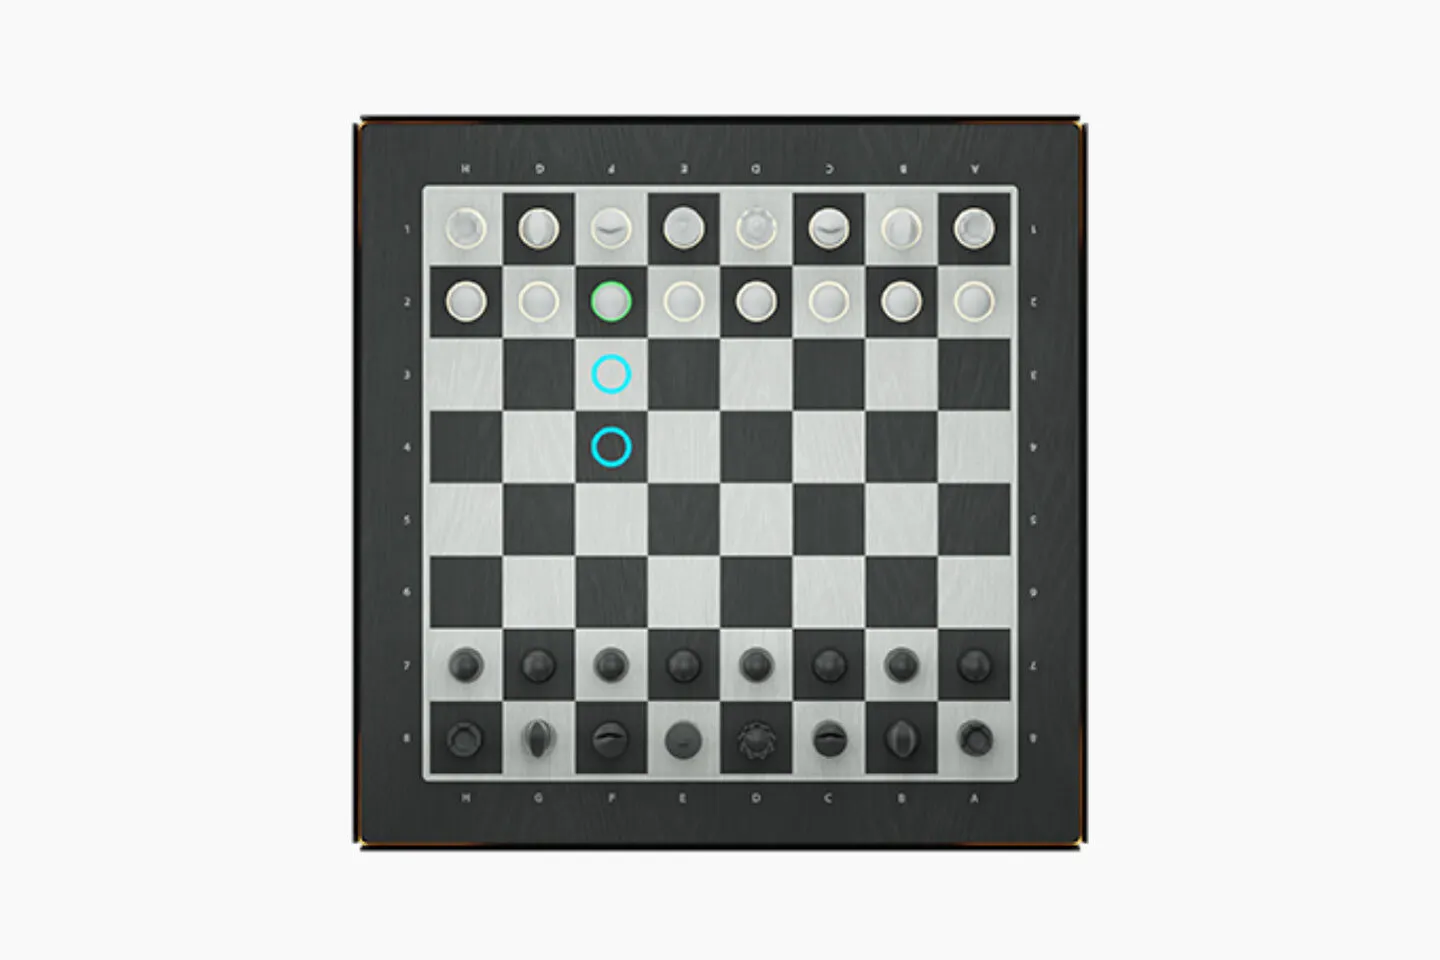 gochess chess board 2 1440x960 1